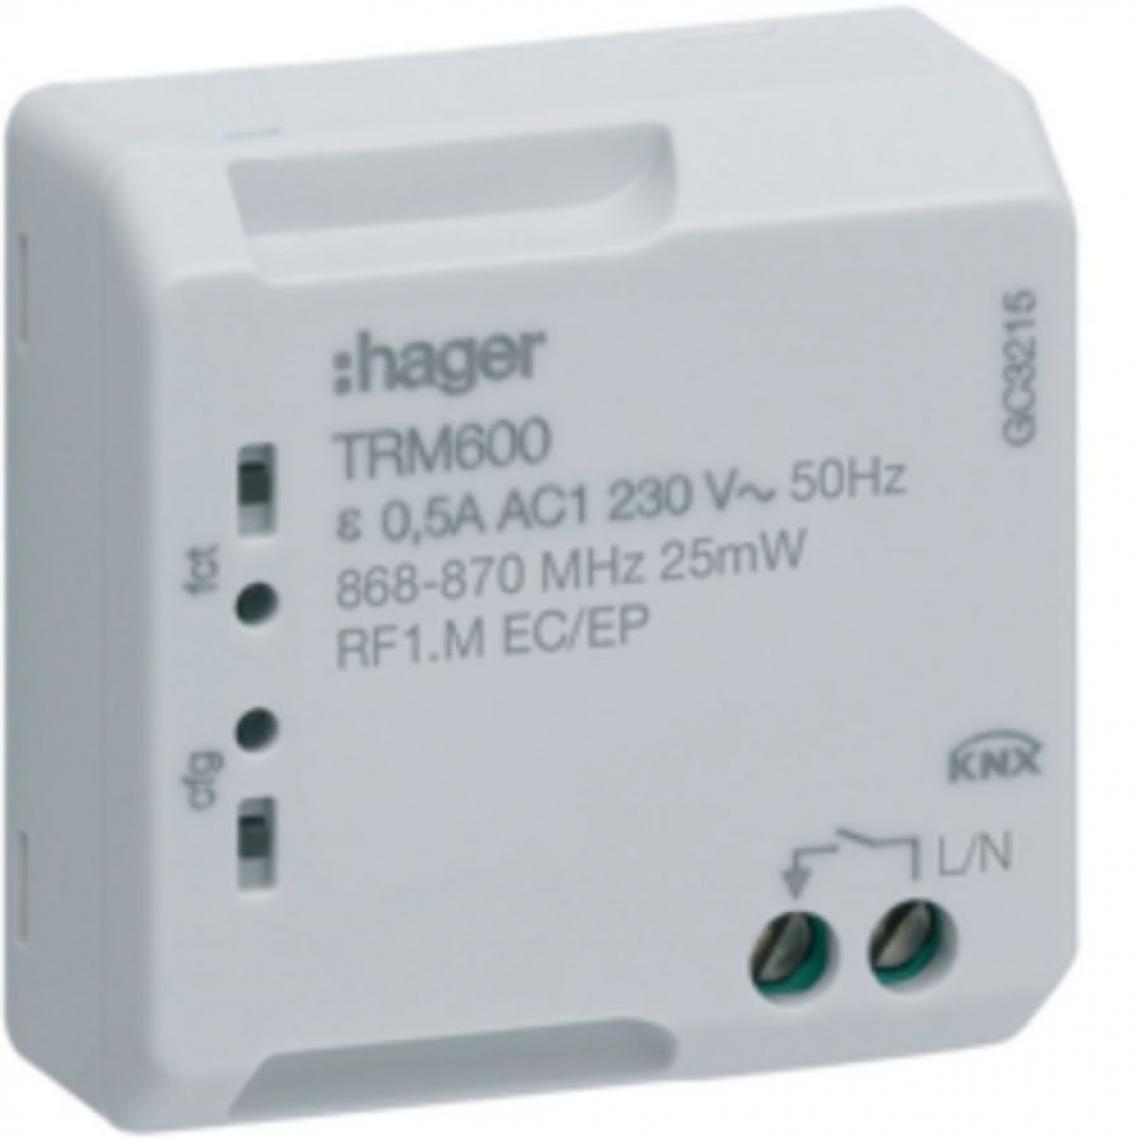 Hager - Hager - TRM600 - Commande pour télérupteur et minuterie KNX Radio - Programmateurs